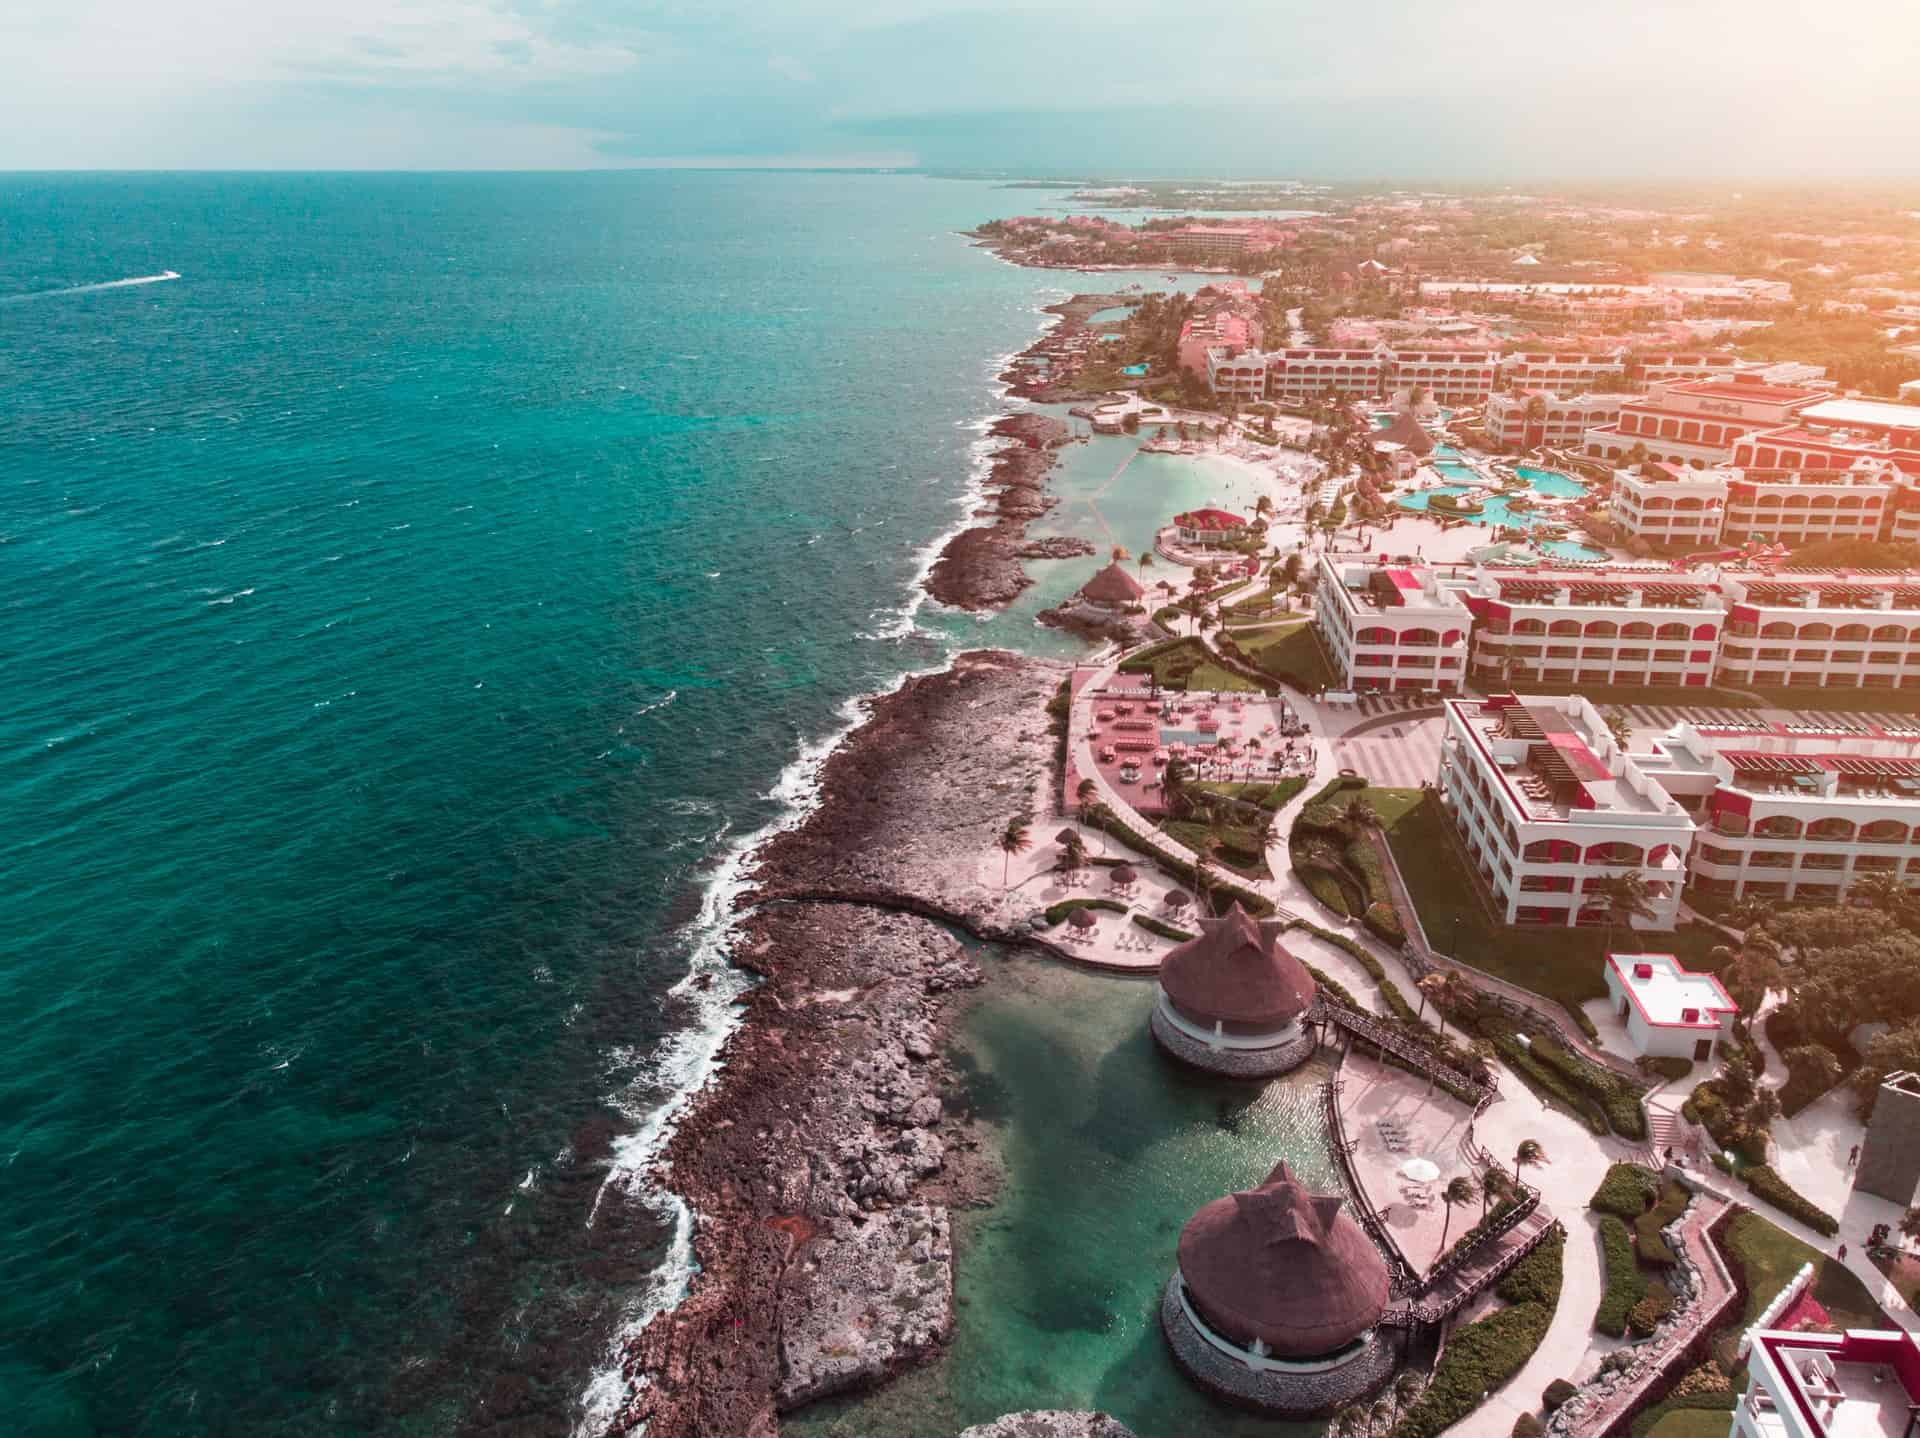 Cancun, Riviera Maya, Mexico